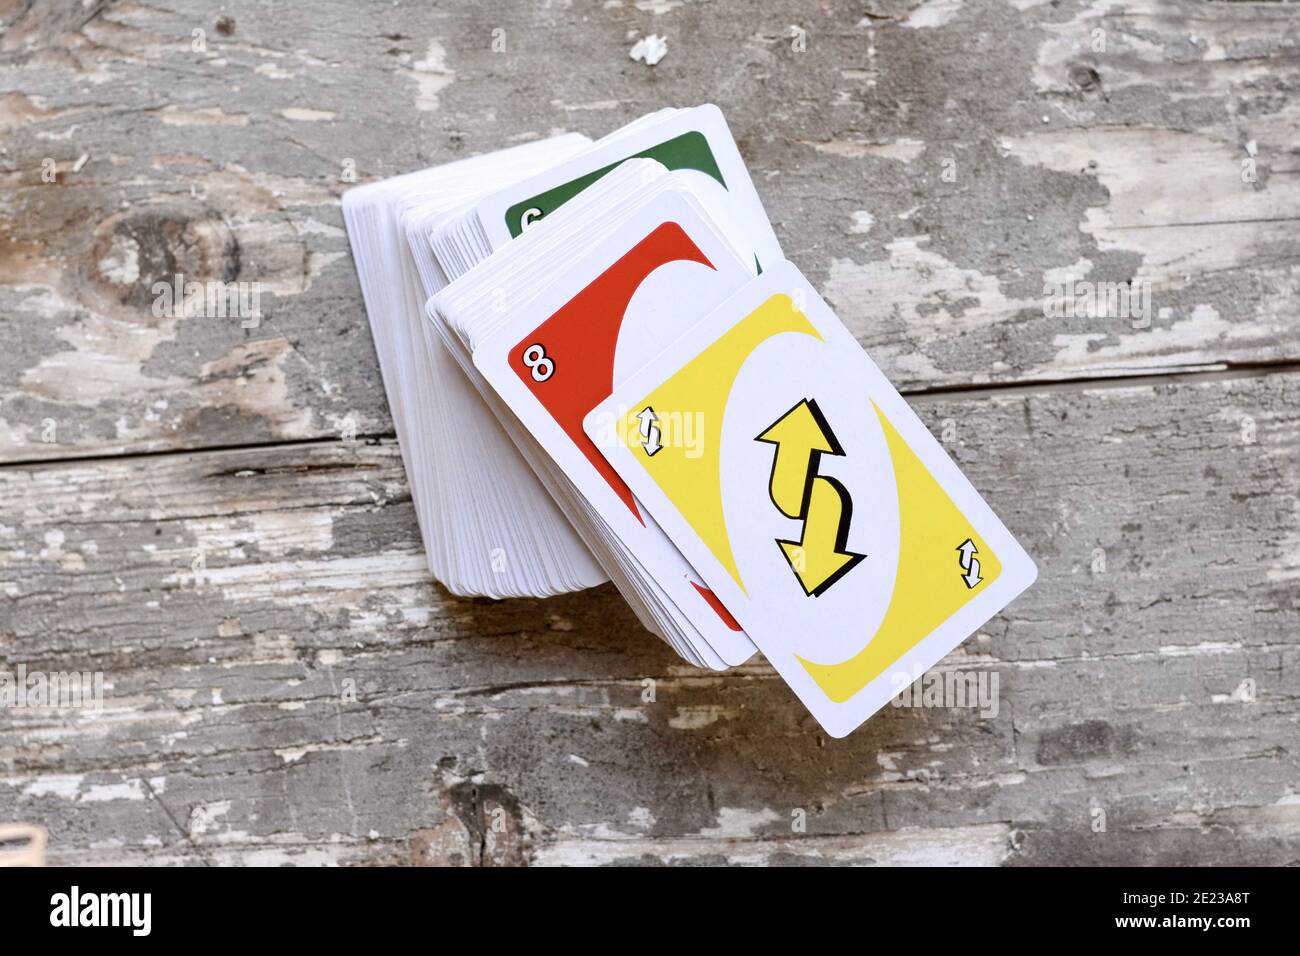 ternopil, ucrânia - 15 de maio de 2022, muitos cartões de jogo uno  coloridos em fundo dourado. uno é um jogo de cartas americano do tipo  derramamento que é jogado com um